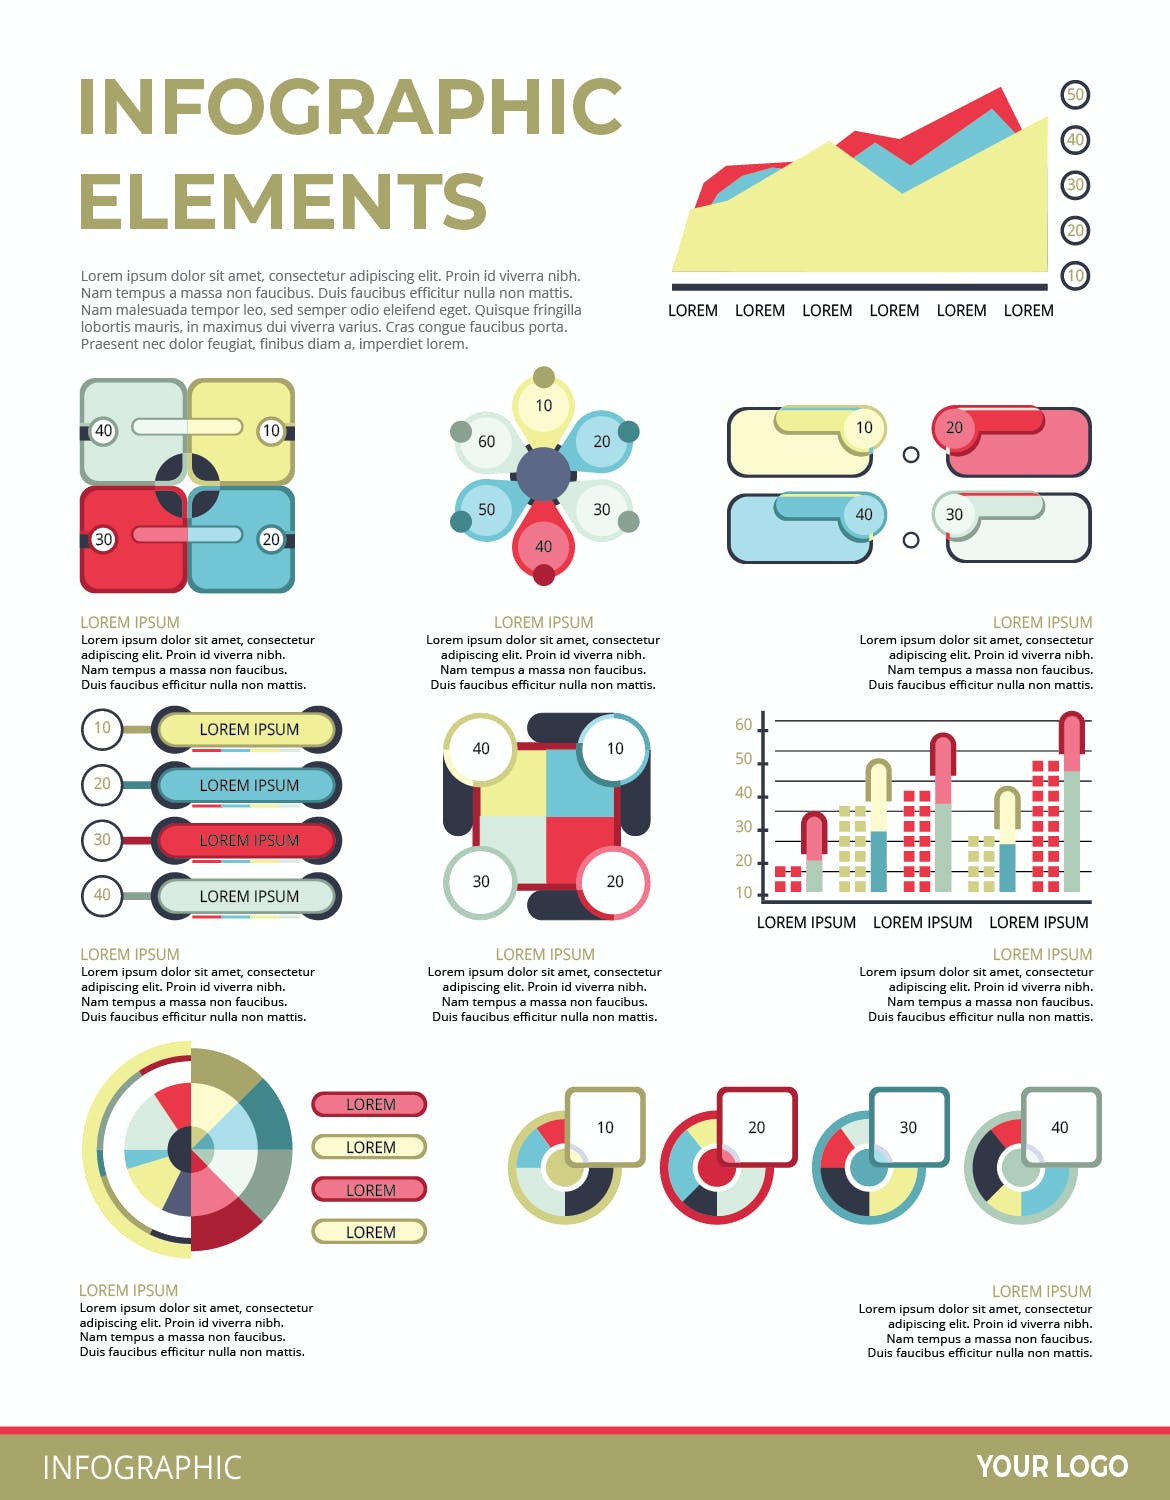 可视化数据信息图表元素素材v144 Infographic Elements Ver. 144 幻灯图表 第2张